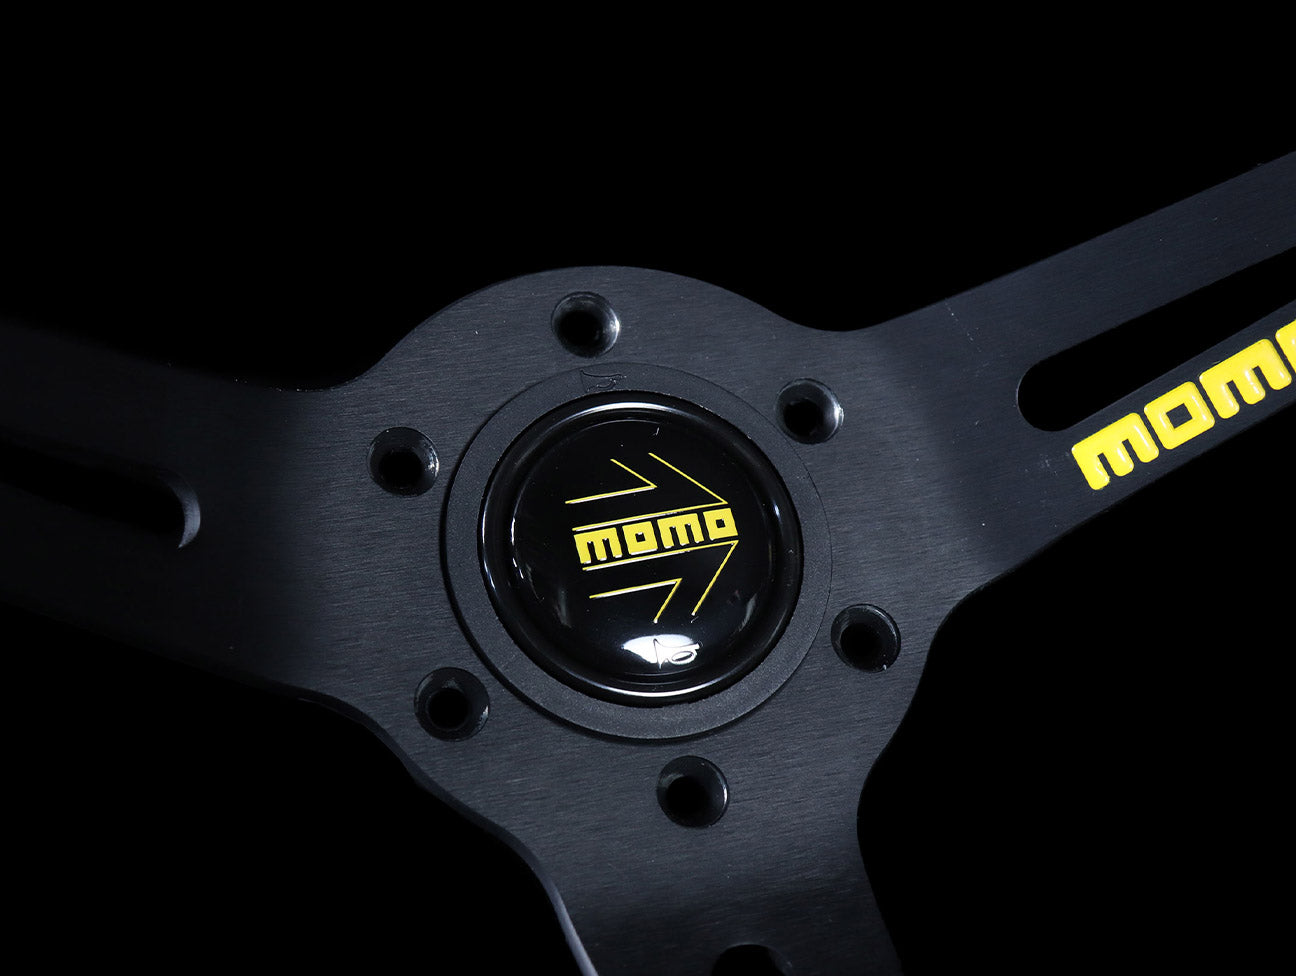 Momo Mod 08 350mm Suede Steering Wheel